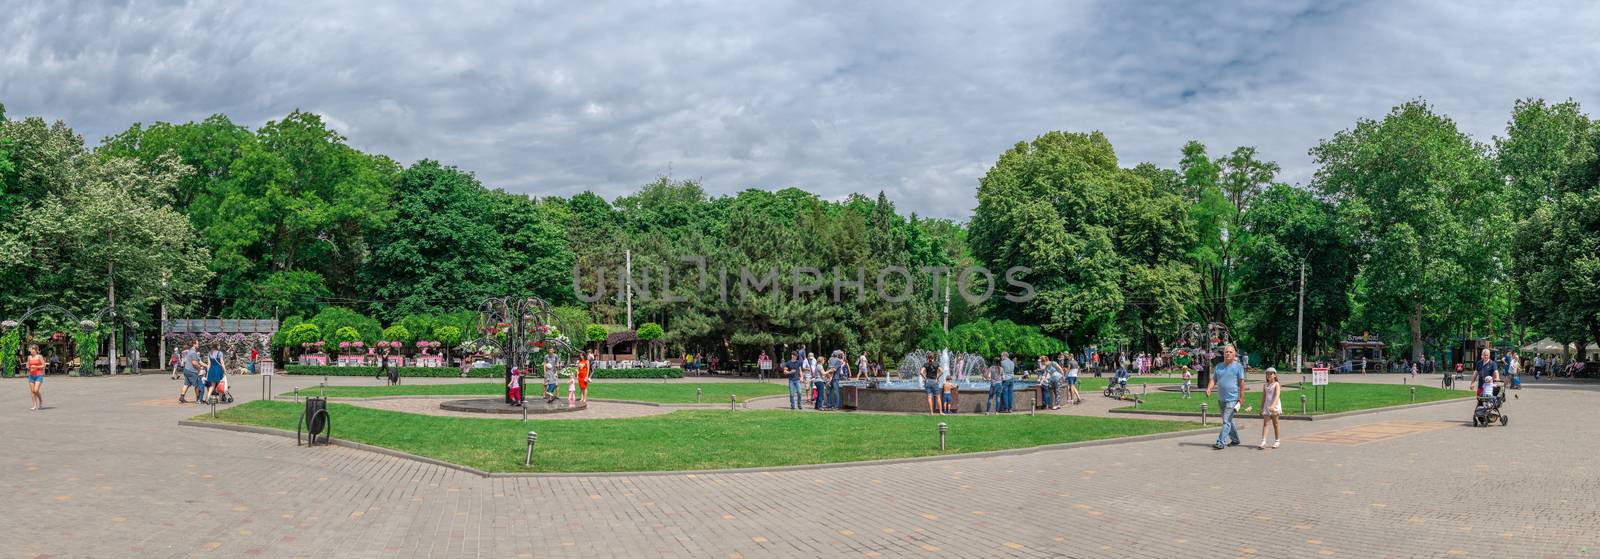 Odessa, Ukraine - 06.09.2019. Fountains in Gorky Park in Odessa, Ukraine